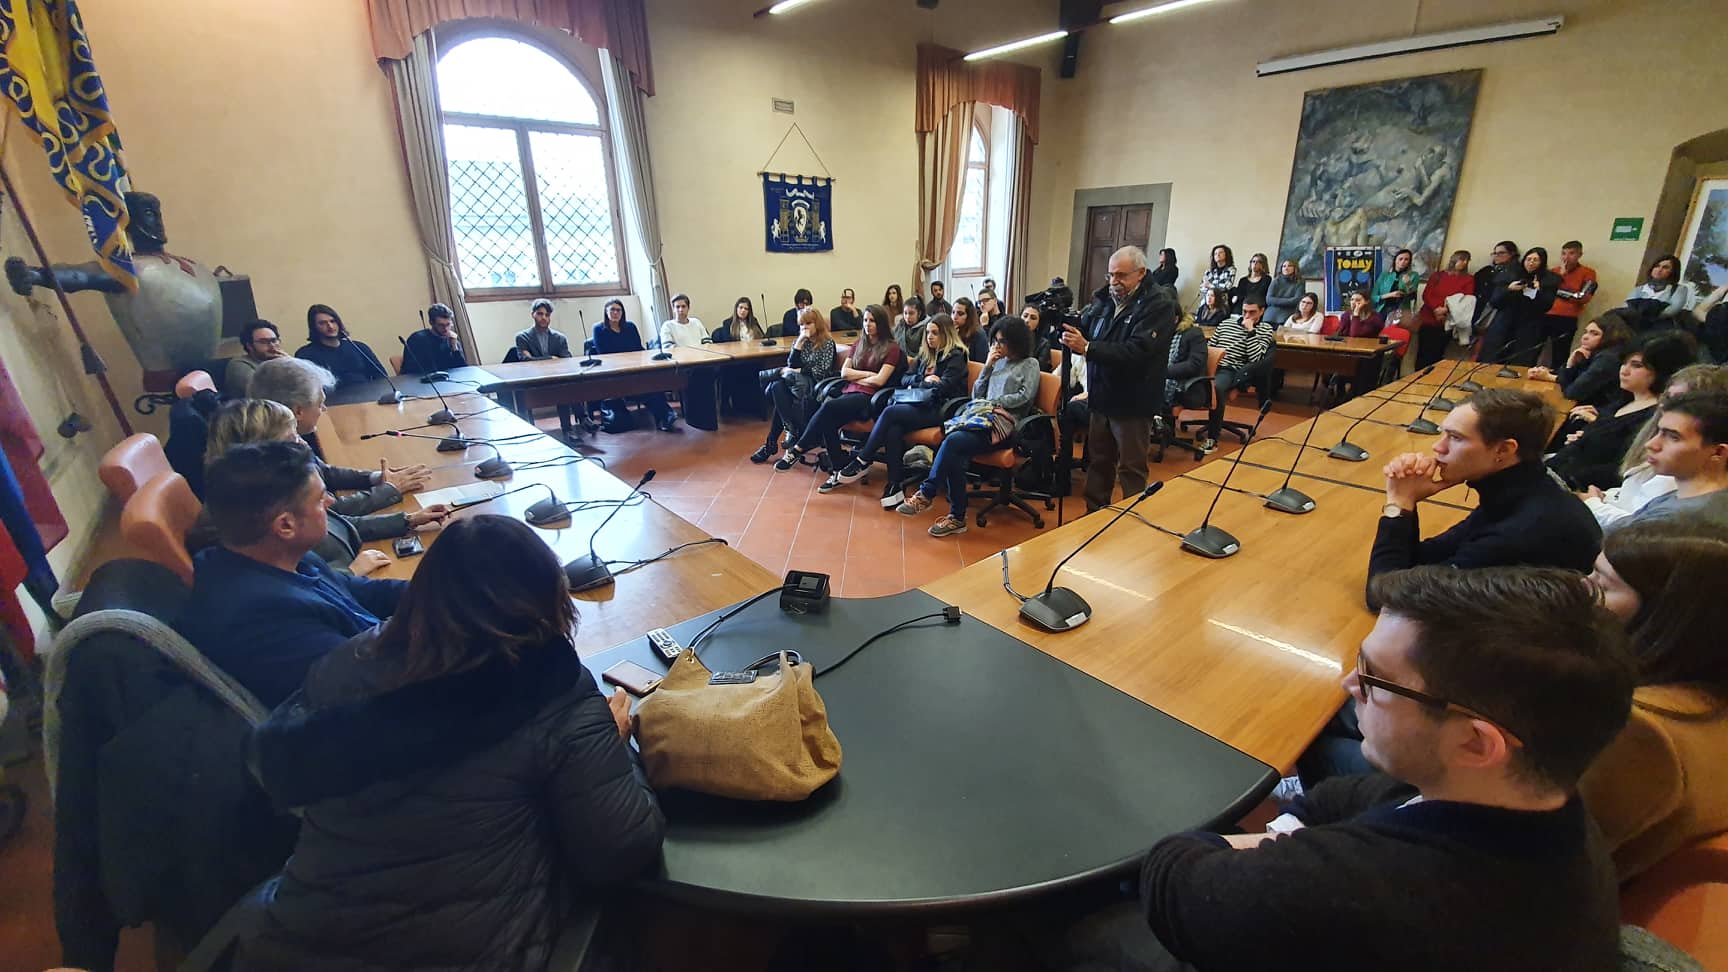 Cinquanta volontari per 7 progetti di servizio civile. E’ record per il Comune di Arezzo